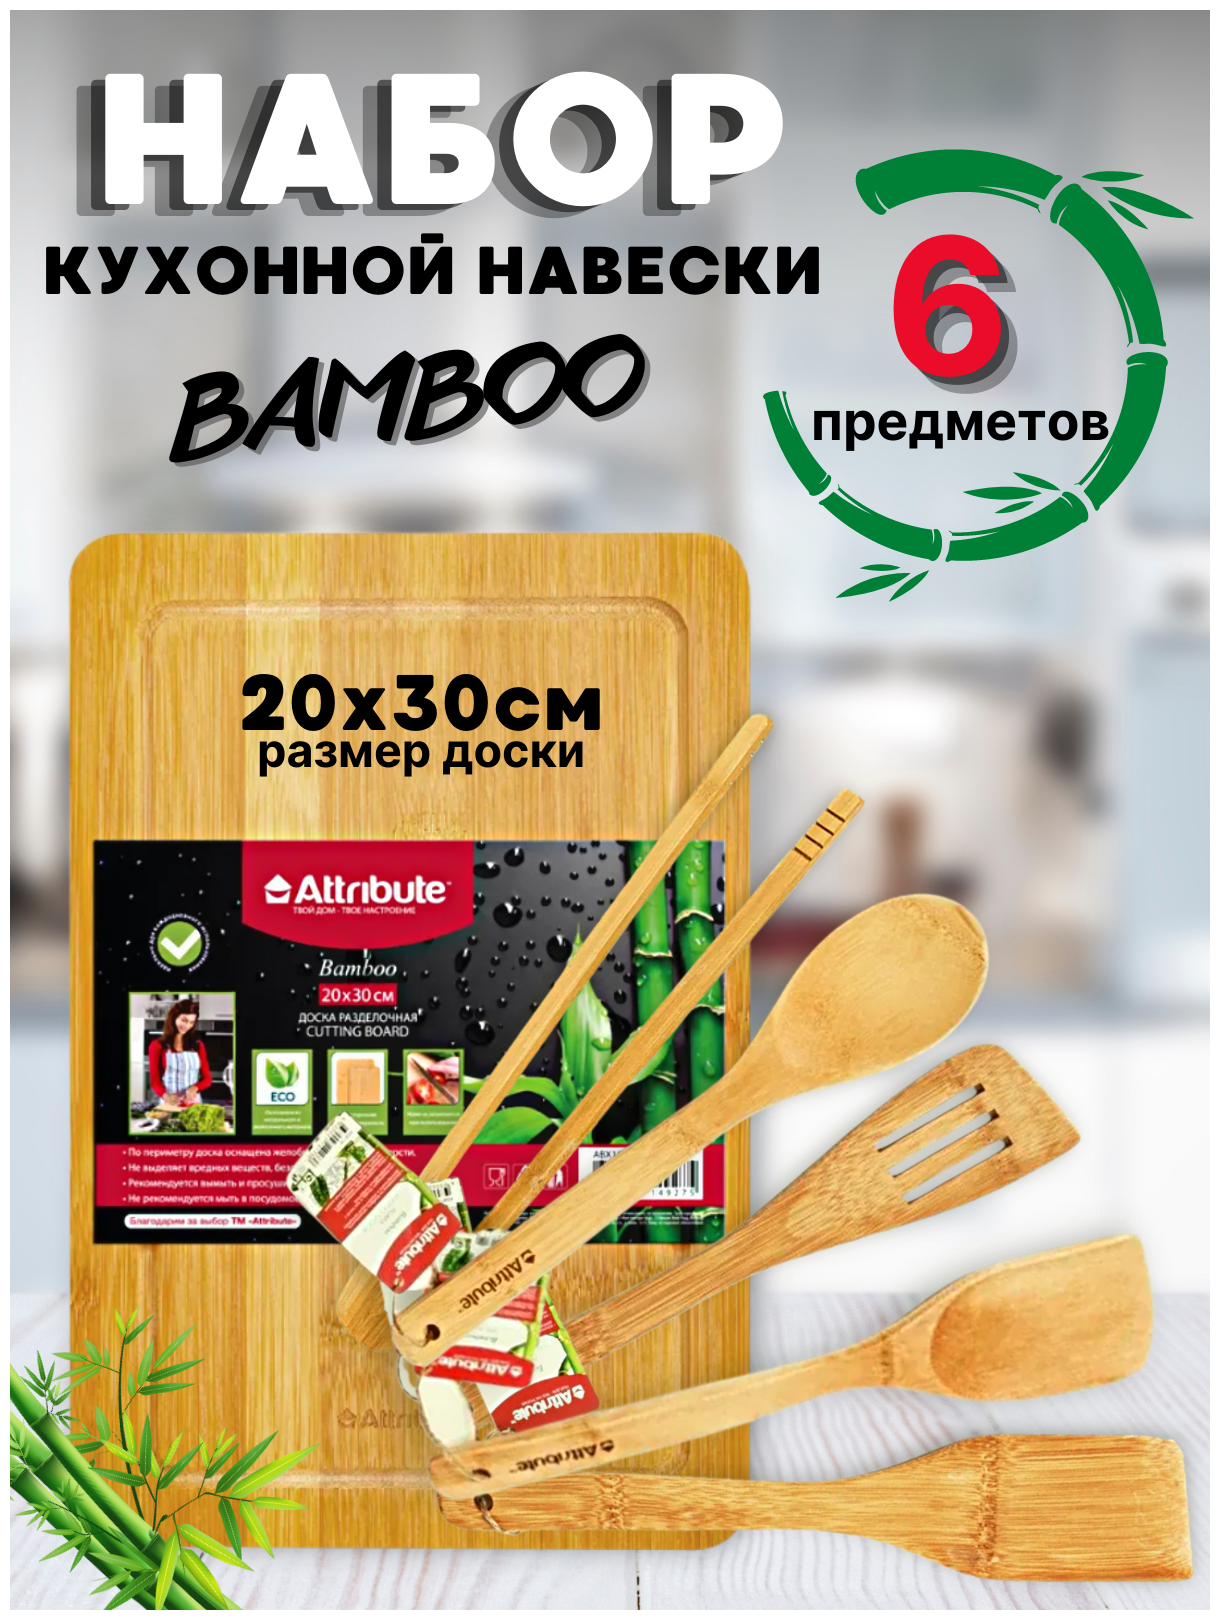 Набор кухонных принадлежностей – навески деревянный BAMBOO 6 предметов с разделочной доской